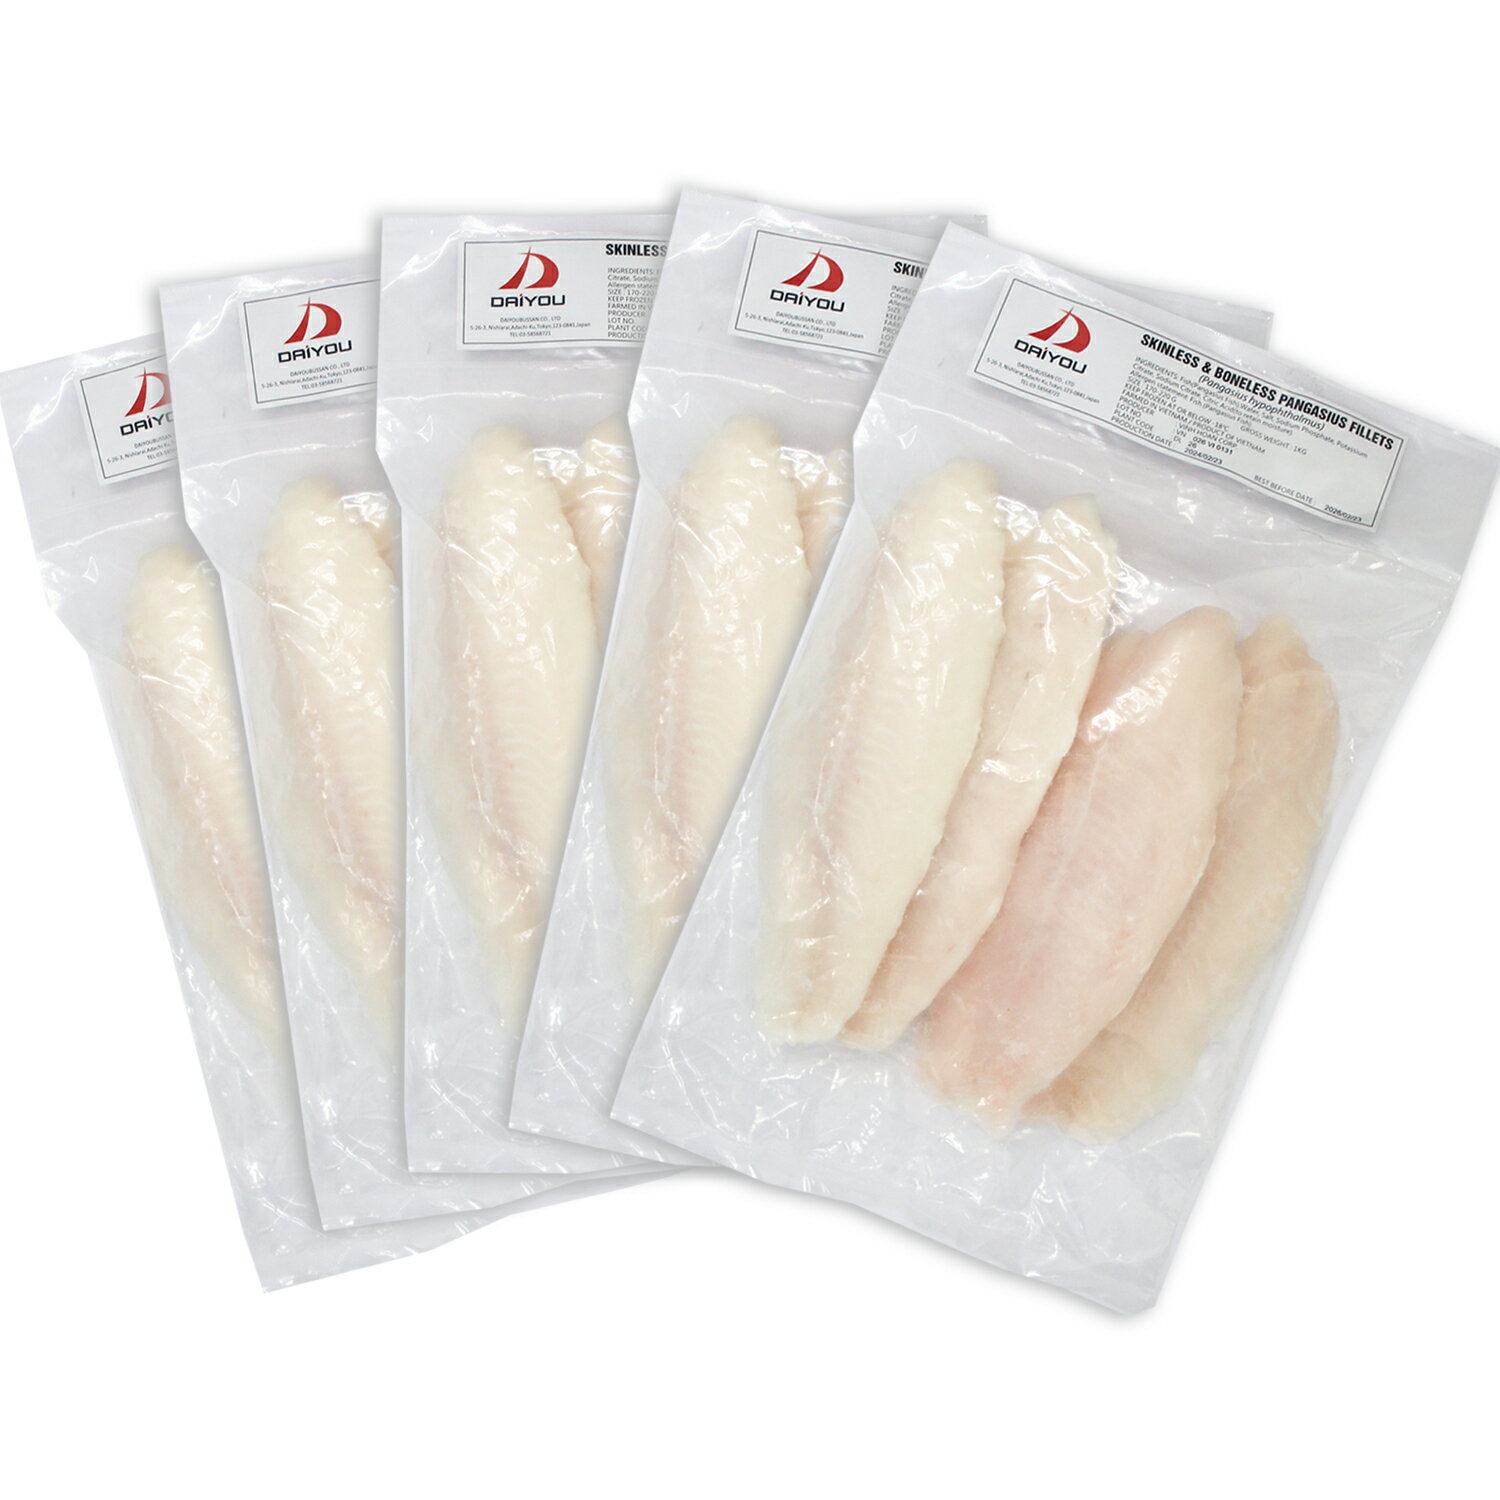 白身魚 バサフィーレ 5kg 白身魚 フィレ フィーレ 冷凍 業務用/ベトナム産/骨なし/皮無し バサ パンガシウス ナマズ なまず